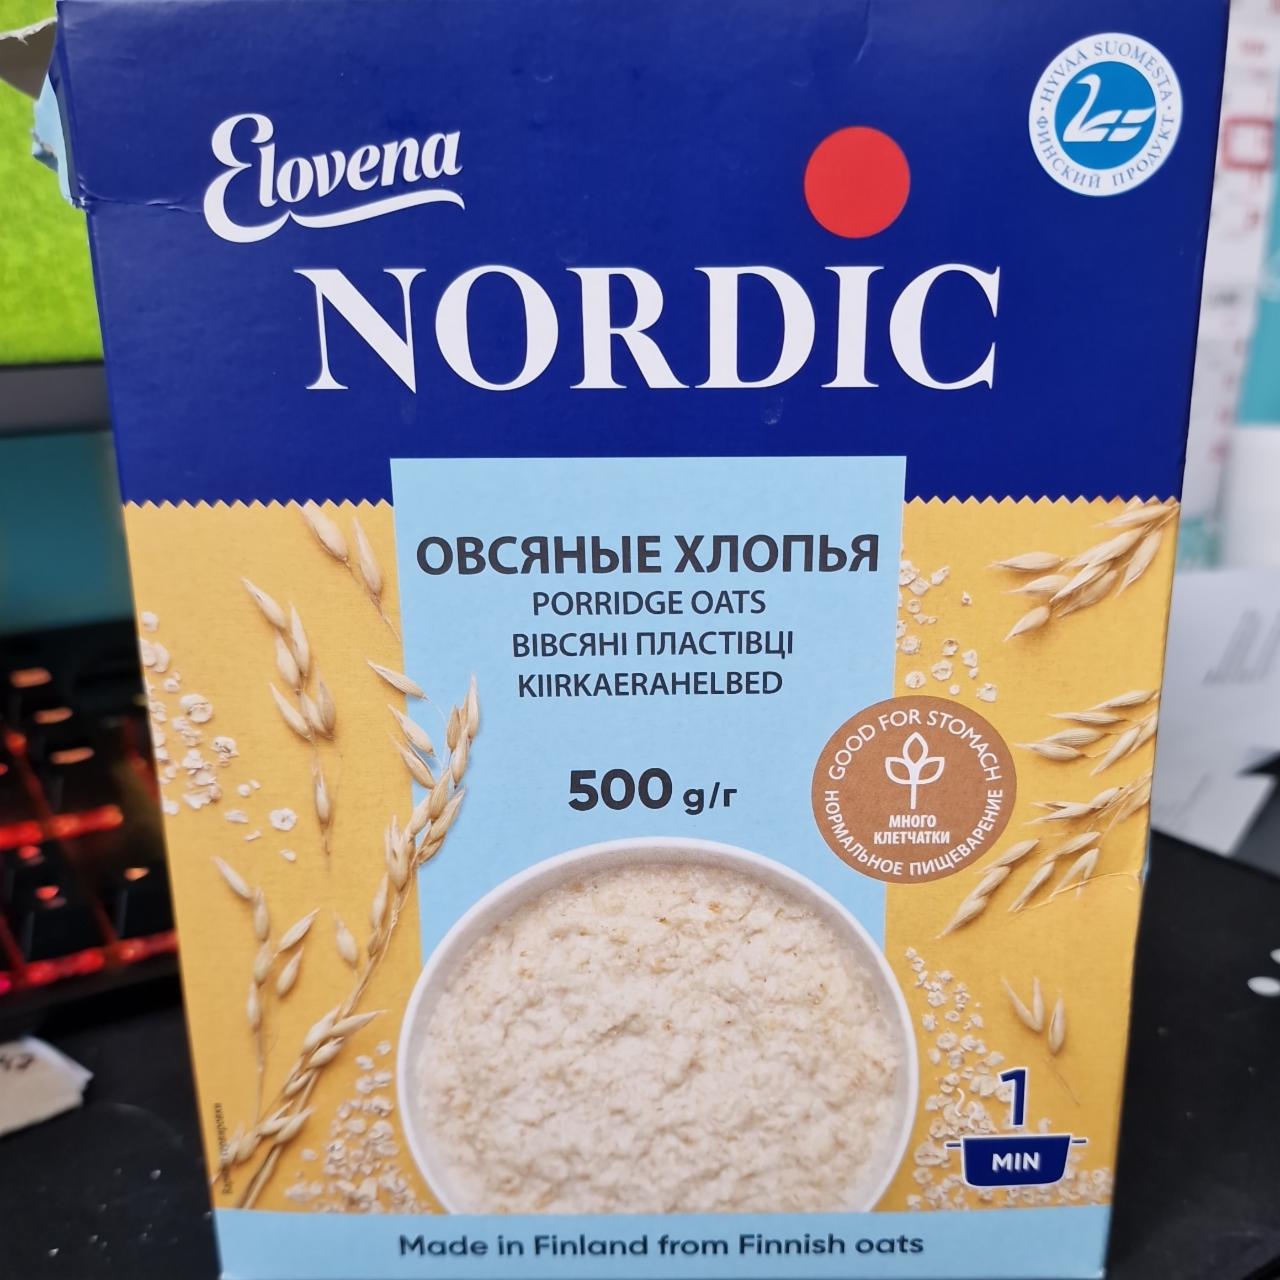 Fotografie - Nordic Porridge Oats Elovena